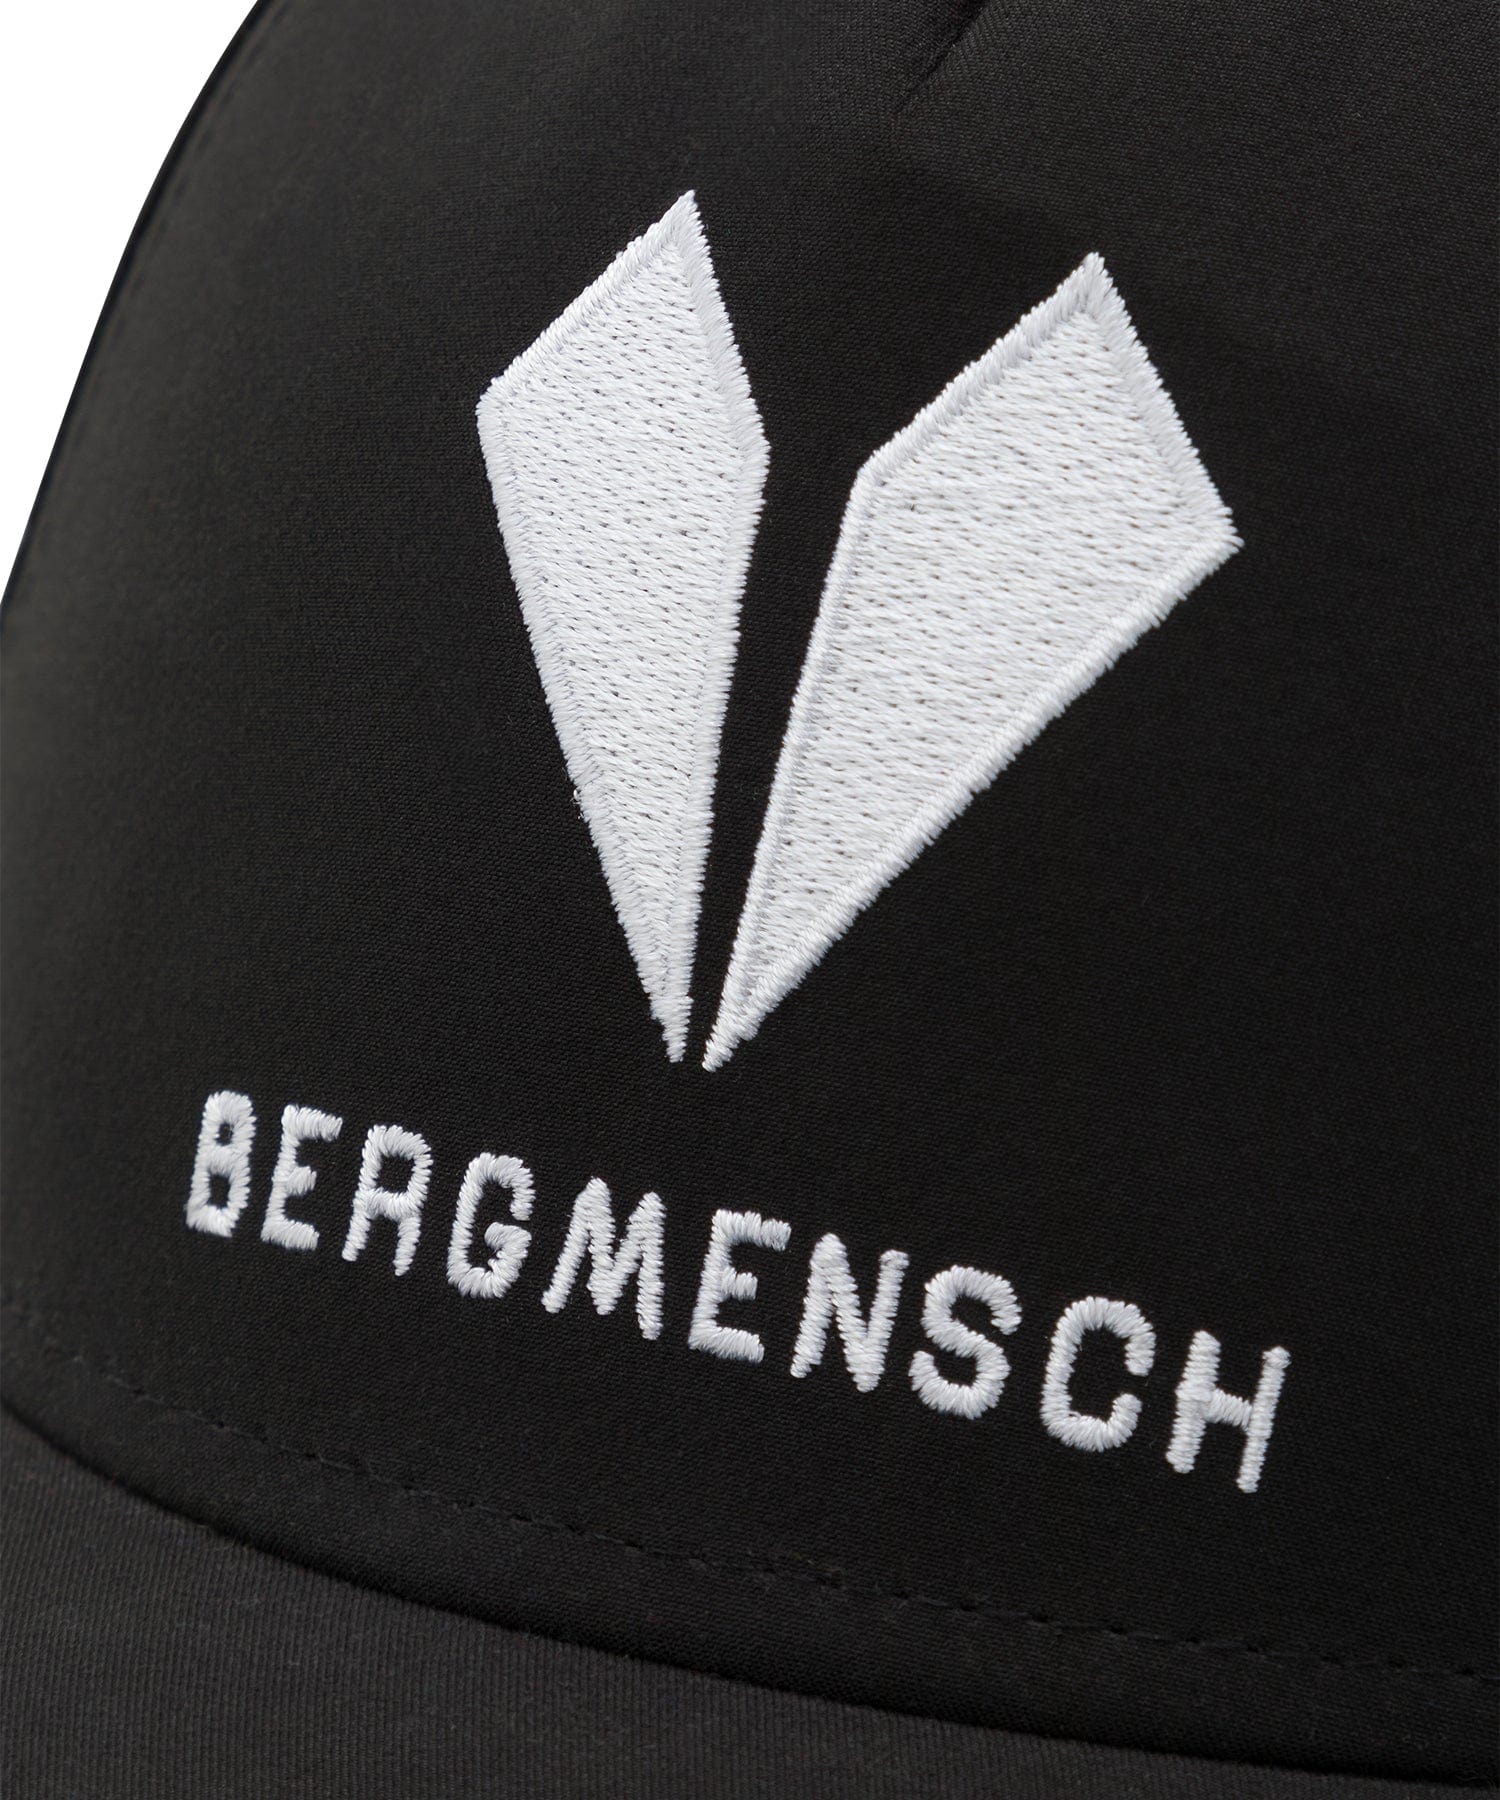 BERGMENSCH® ReyPET Cap von Bergmensch